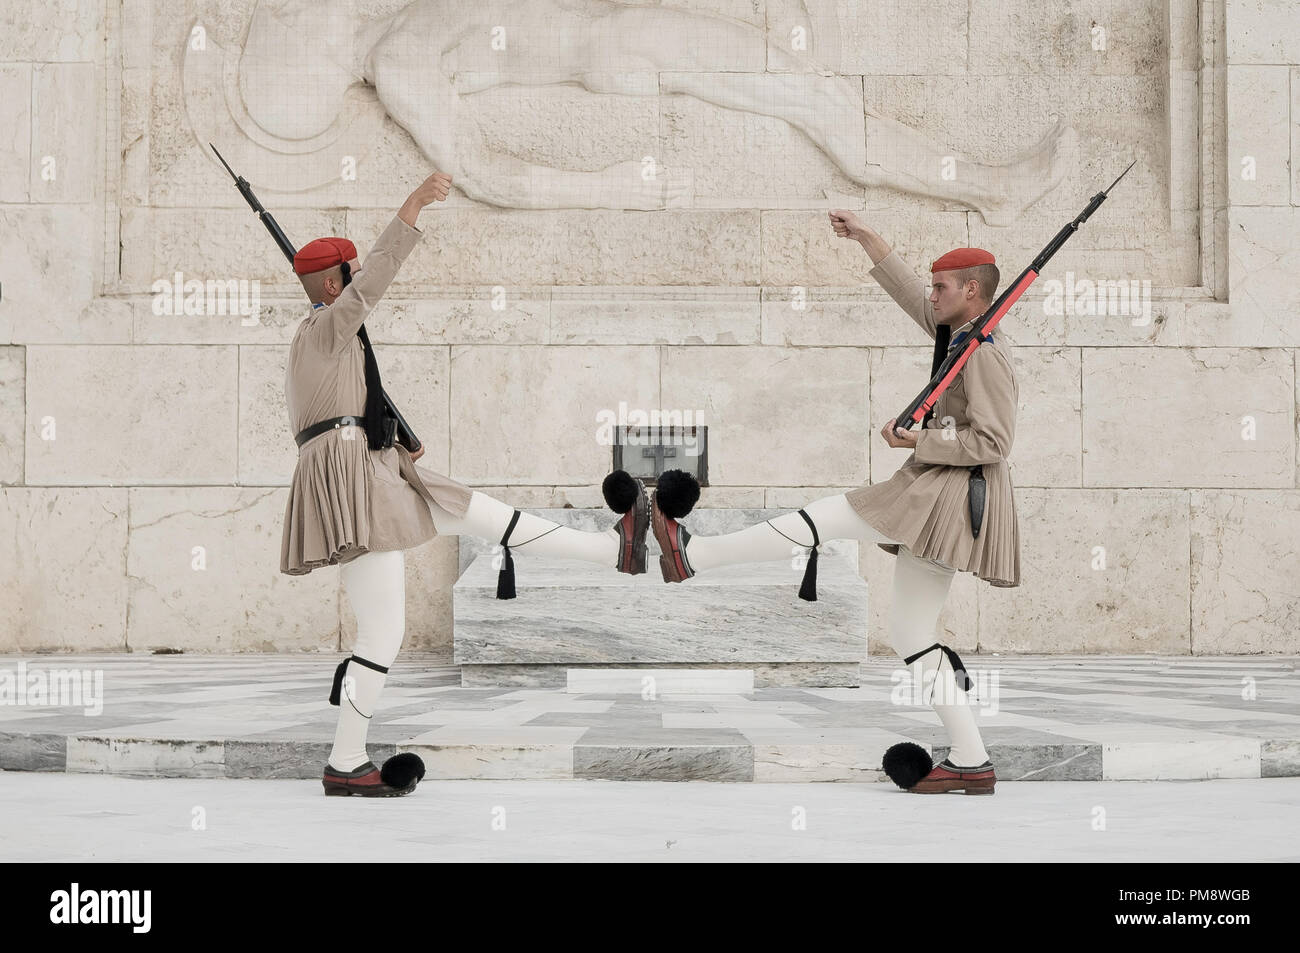 Due protezioni visto al Milite Ignoto monumento davanti al parlamento greco. I turisti si vede guardando il cambio della guardia a Syndagma piazza davanti al parlamento greco ad Atene, in Grecia. Foto Stock